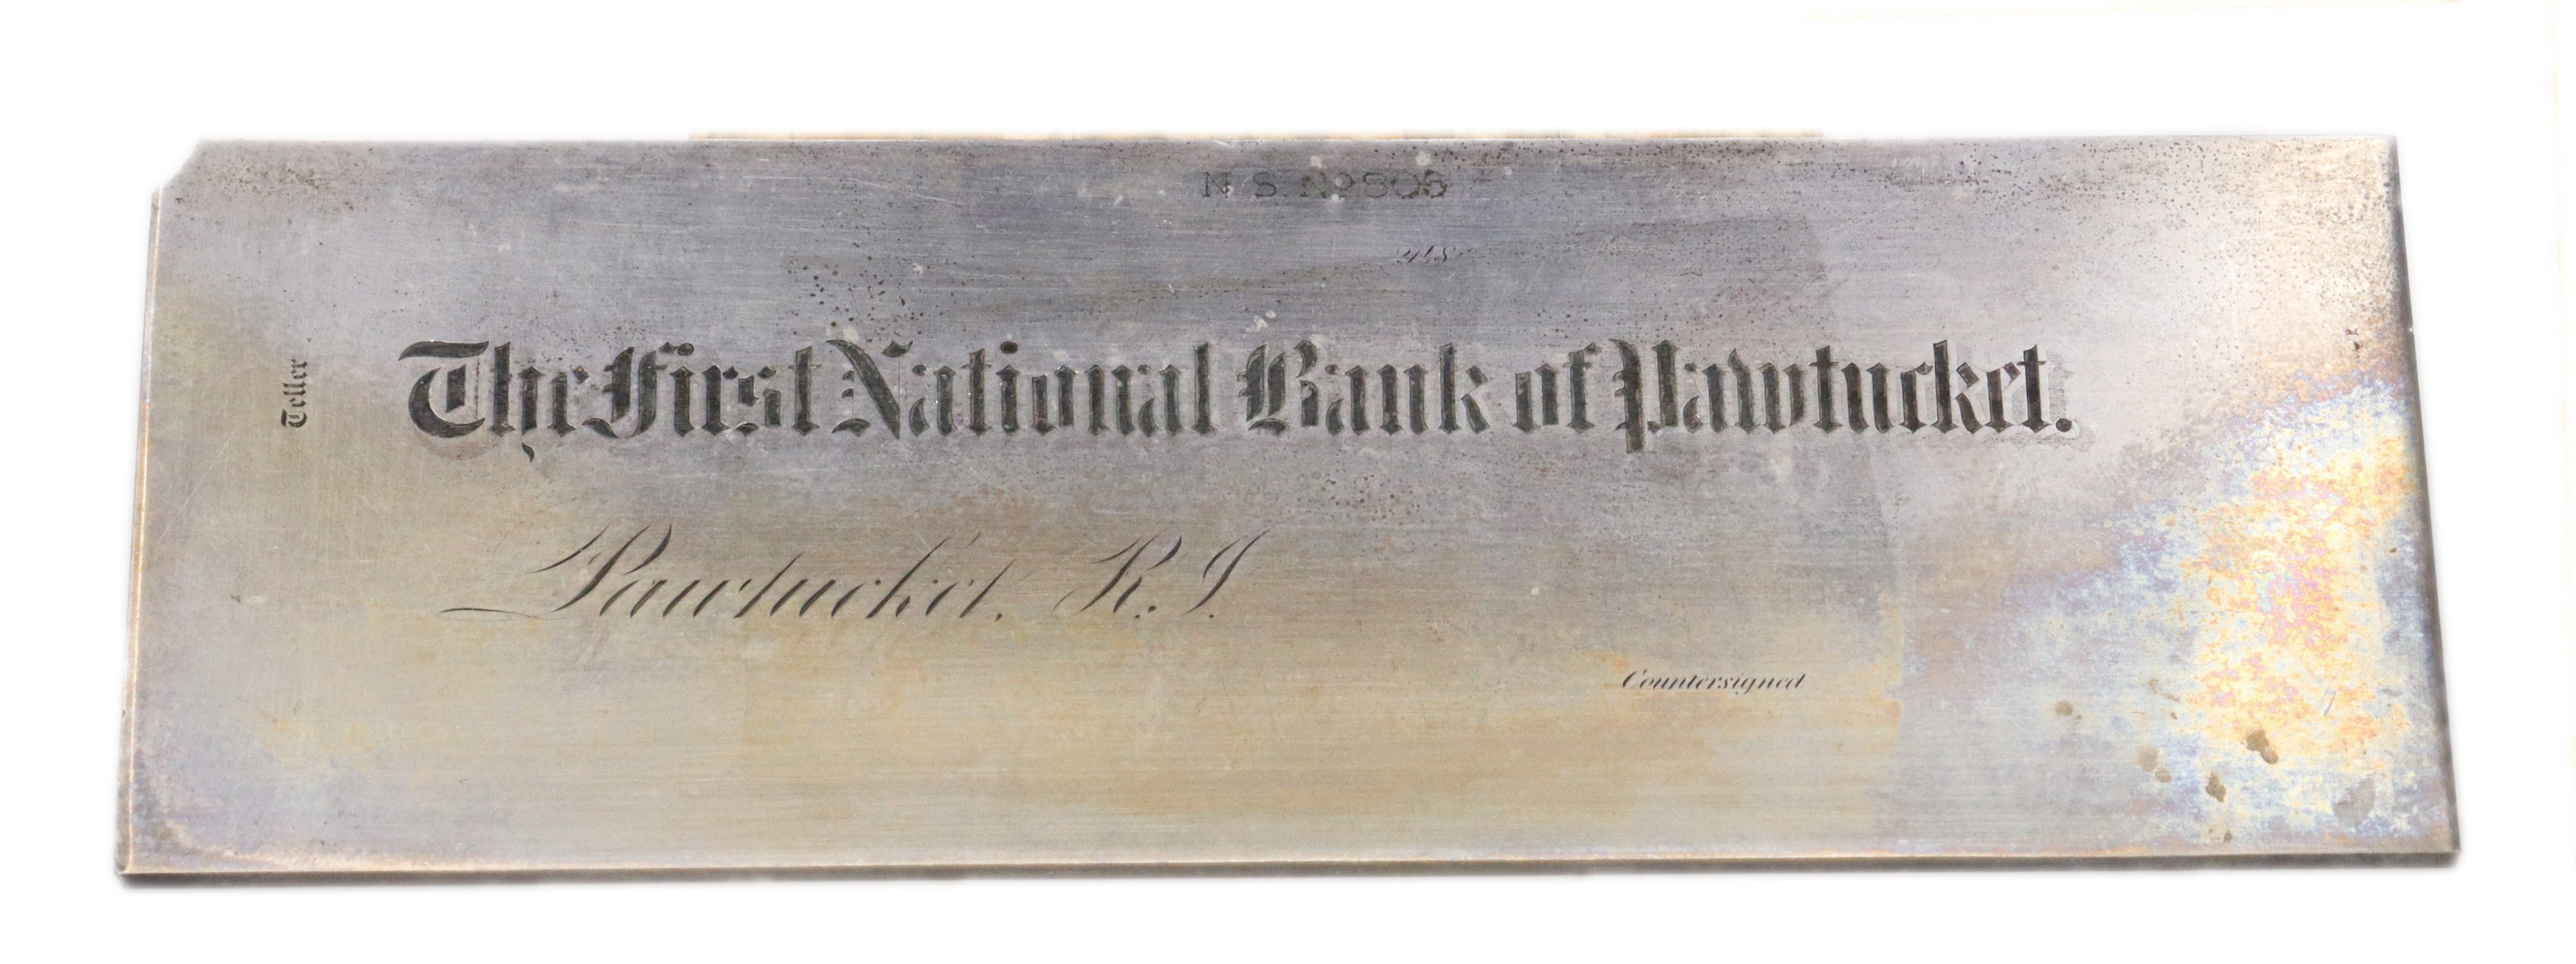 Bank Printing Plate - First National Bank of Pawtucket, RI - circa 1865-1900